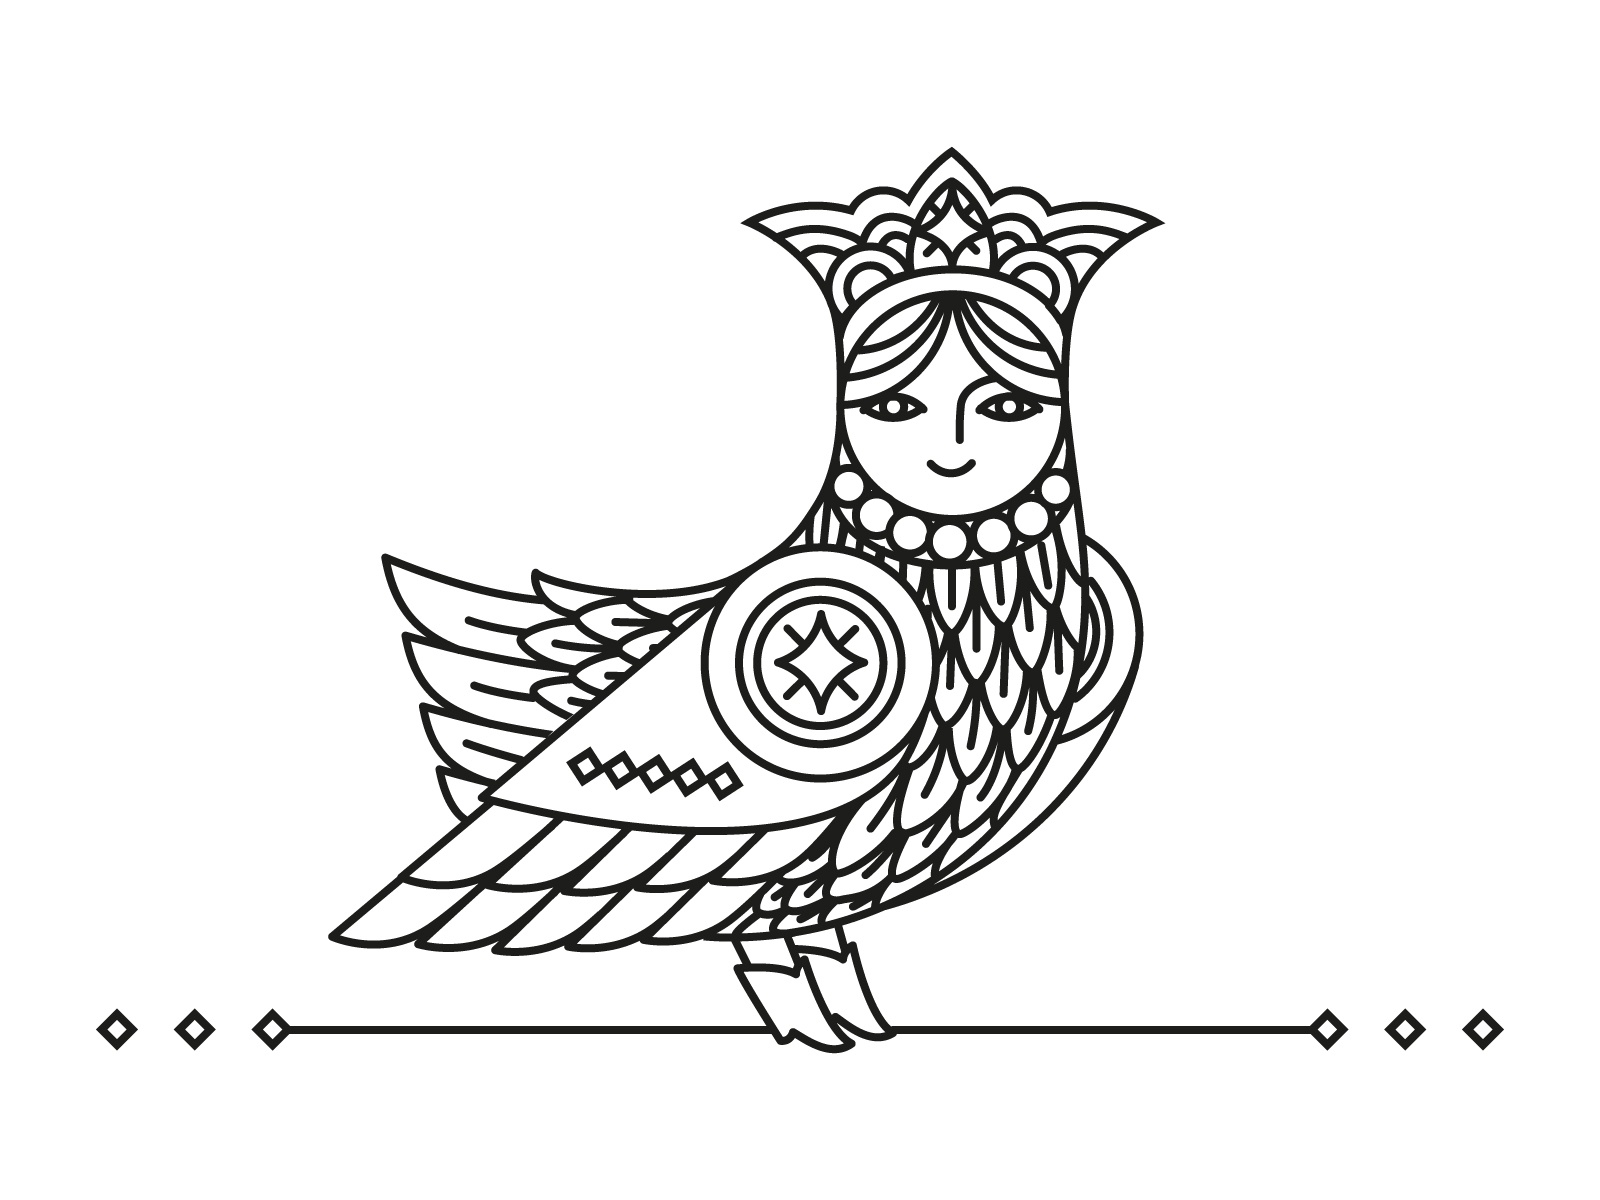 Символизм птицы как духовного проводника